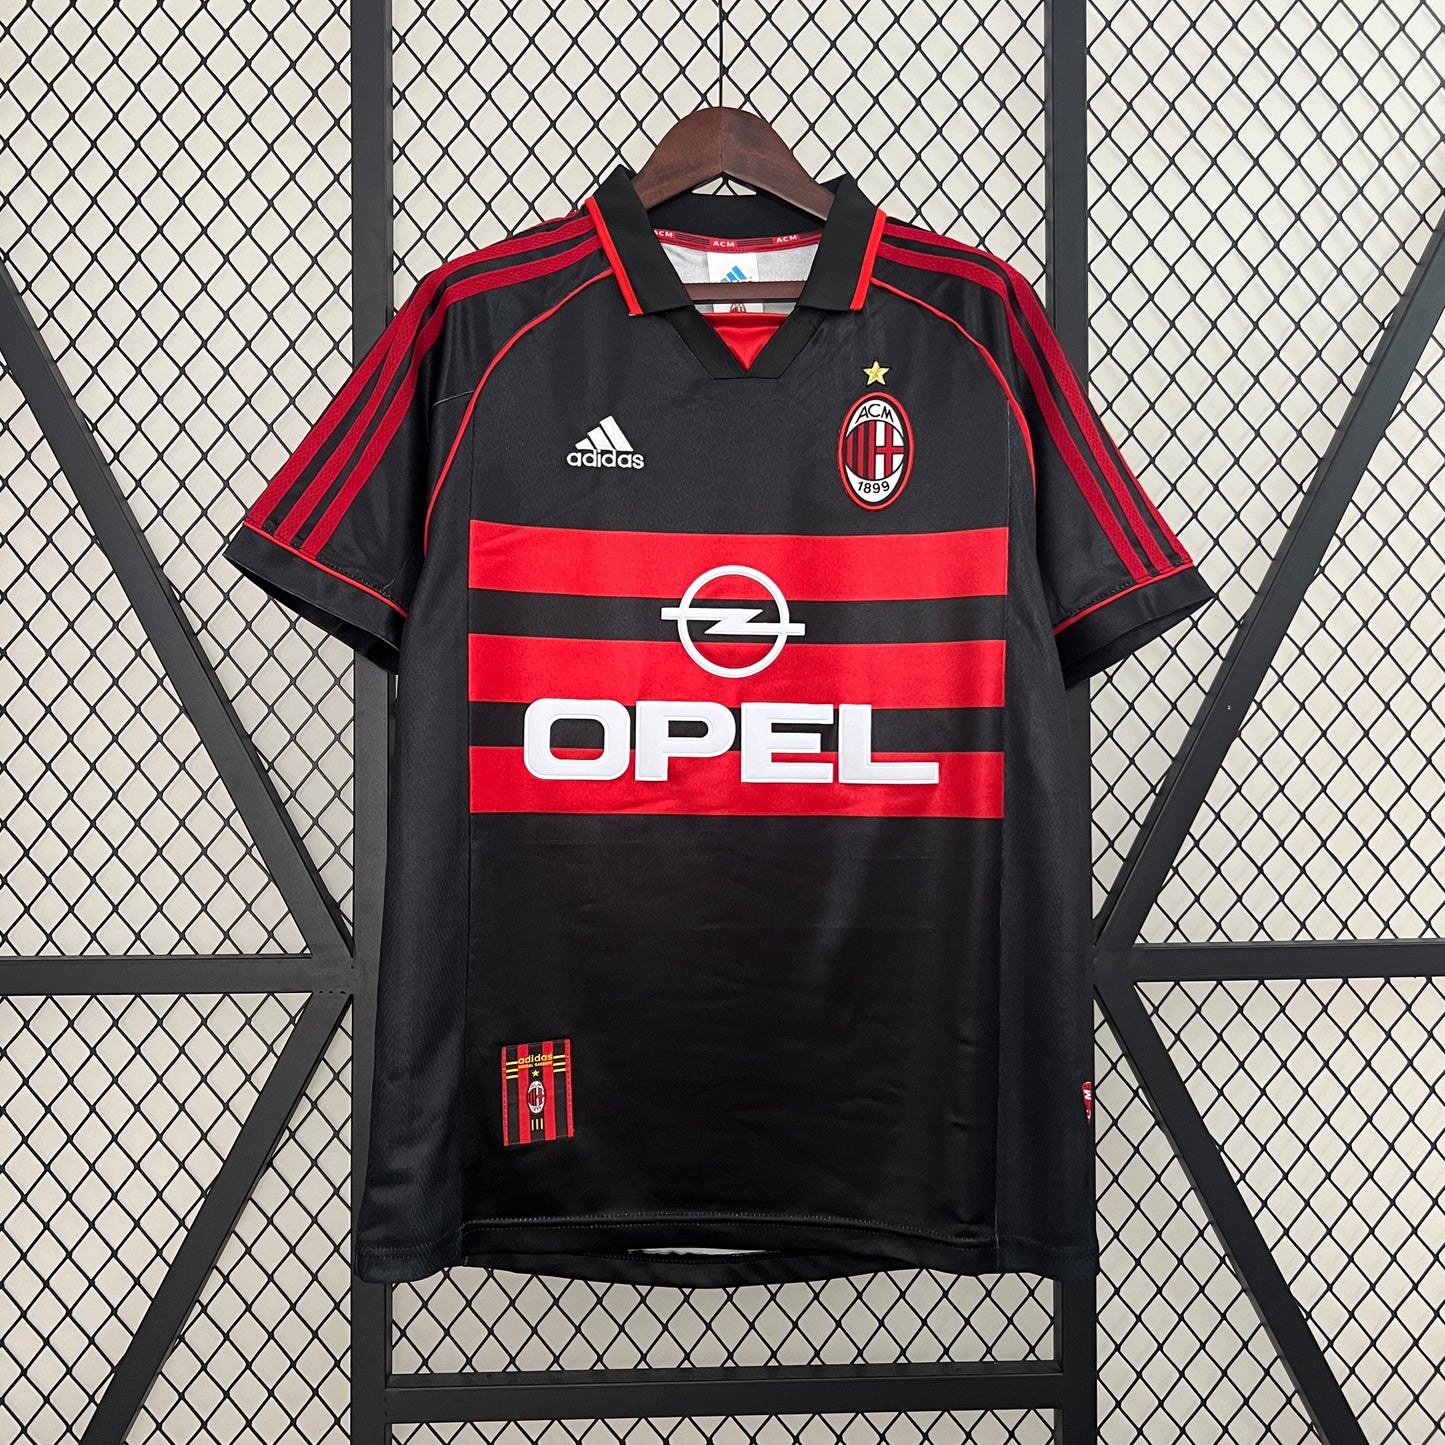 Camiseta AC Milan 98/99 Thierd Kit Visita | Retro